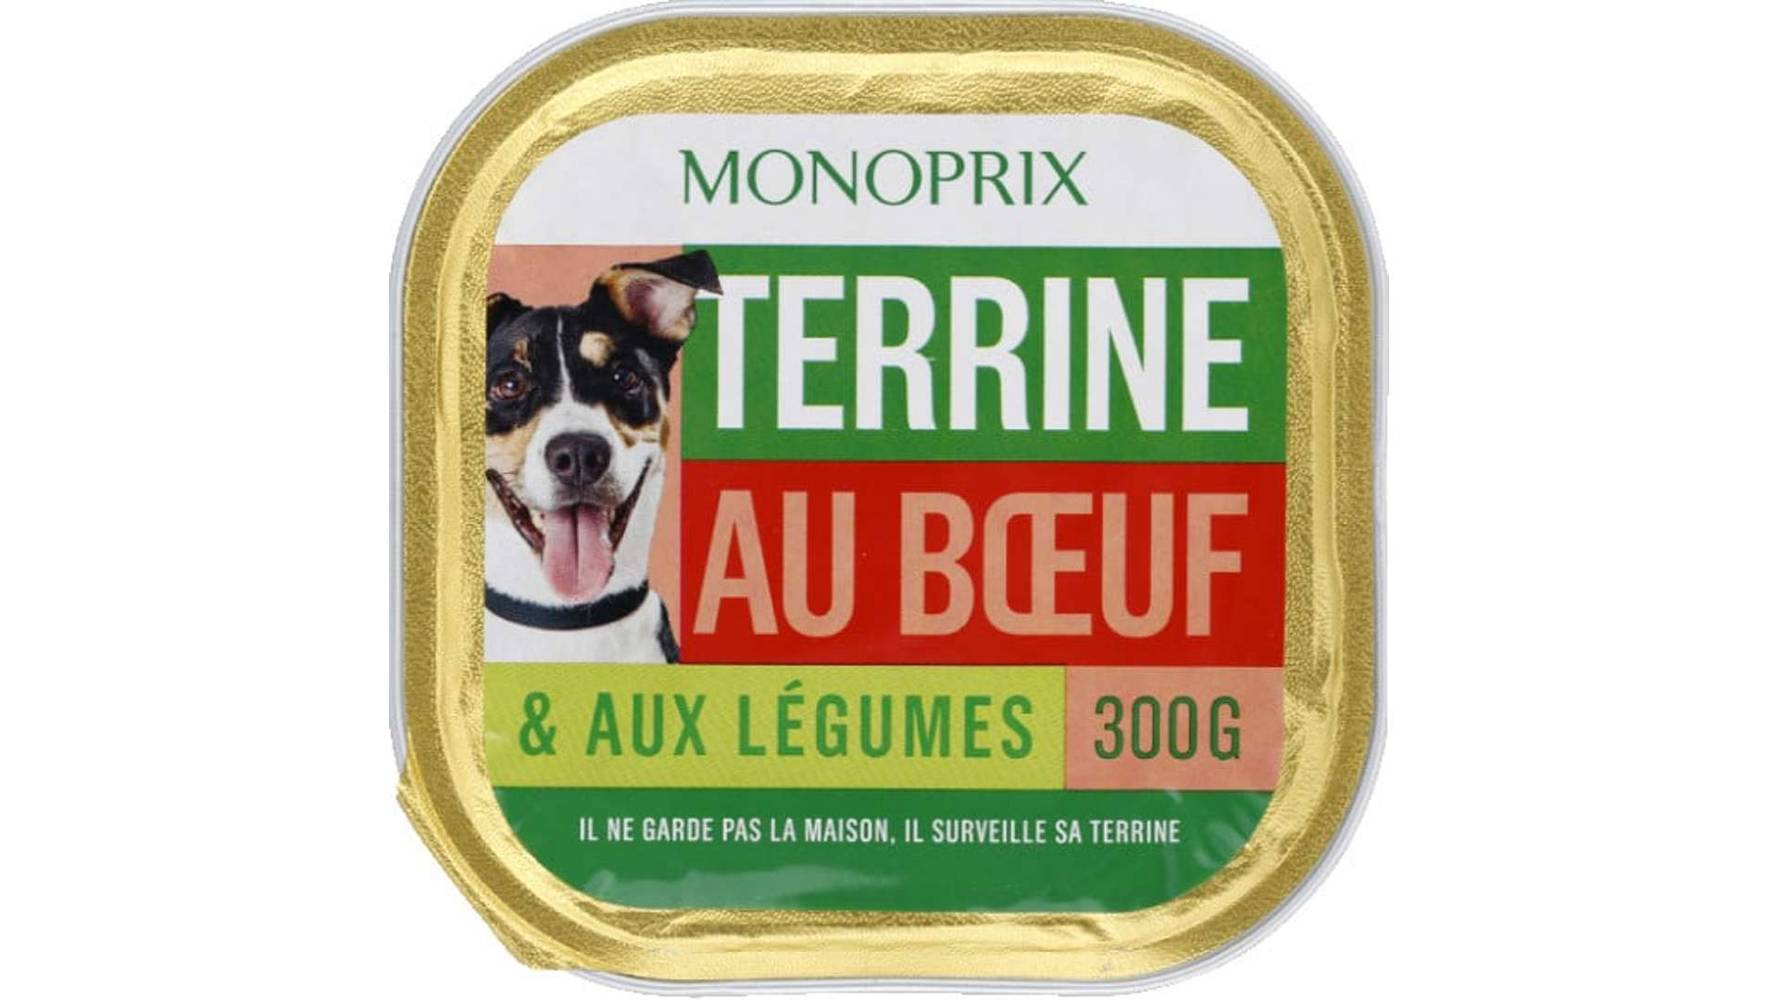 Monoprix Terrine de boeuf & aux légumes pour chien La barquette de 300g